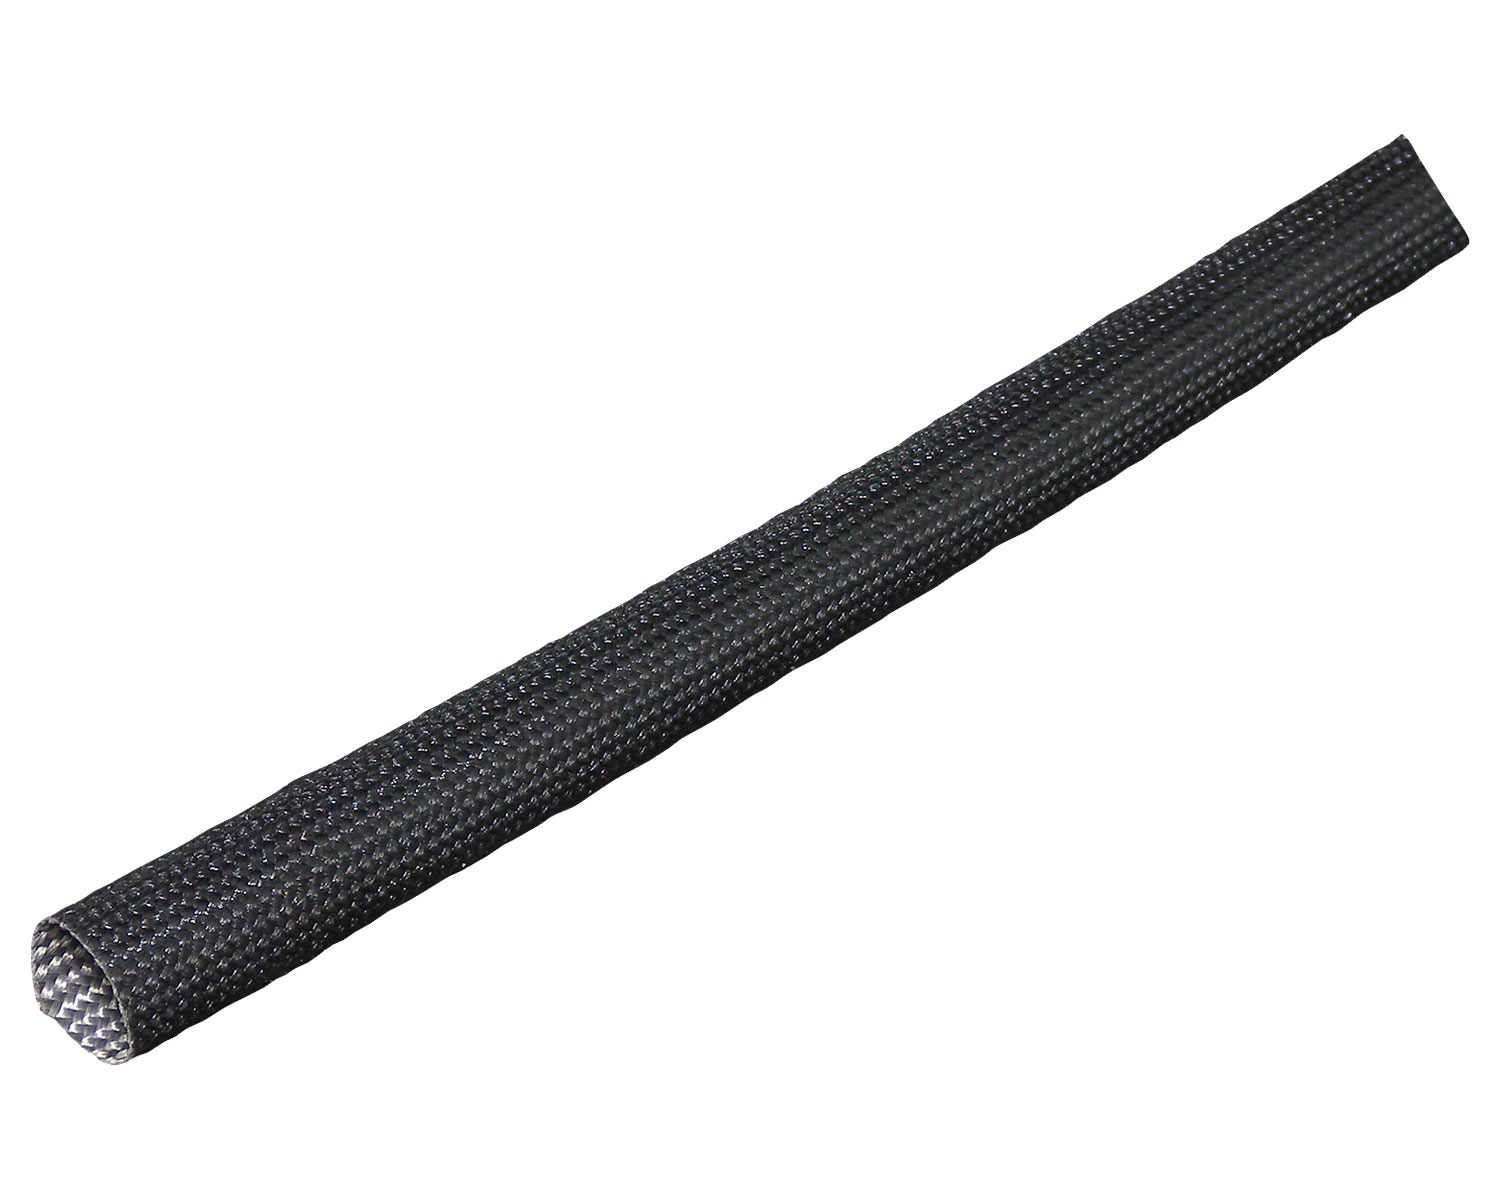 005481 - シリコンガラスチューブ ブラック 18mm × 1M - ハーレー用パーツ カスタムパーツの通信販売 ネオファクトリー